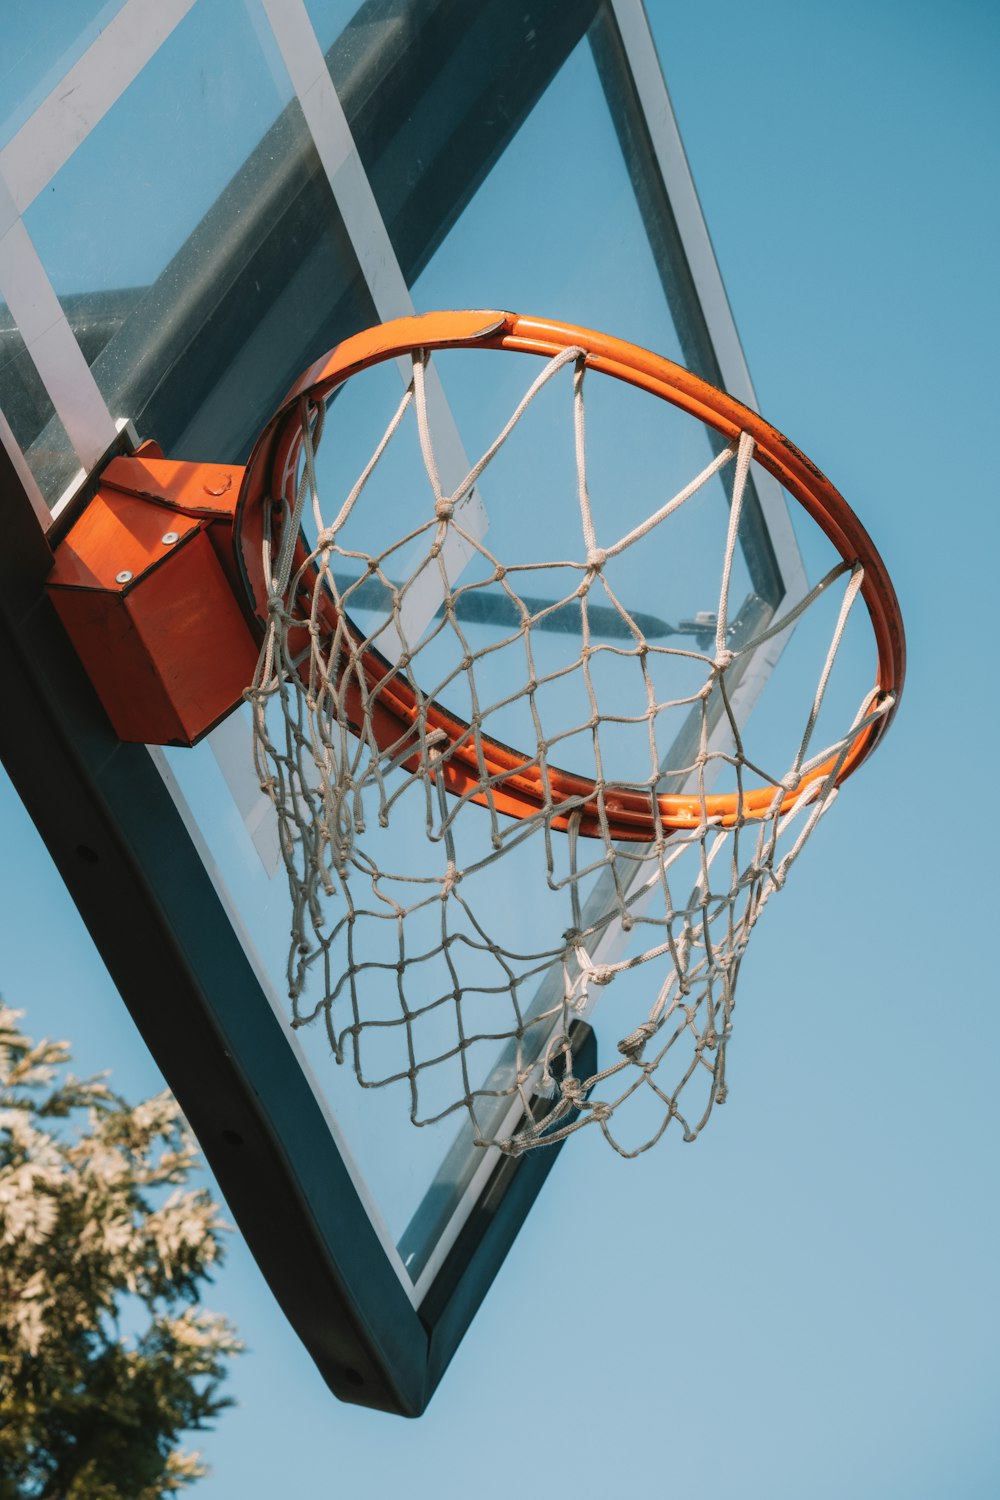 a basketball going through the net of a basketball hoop